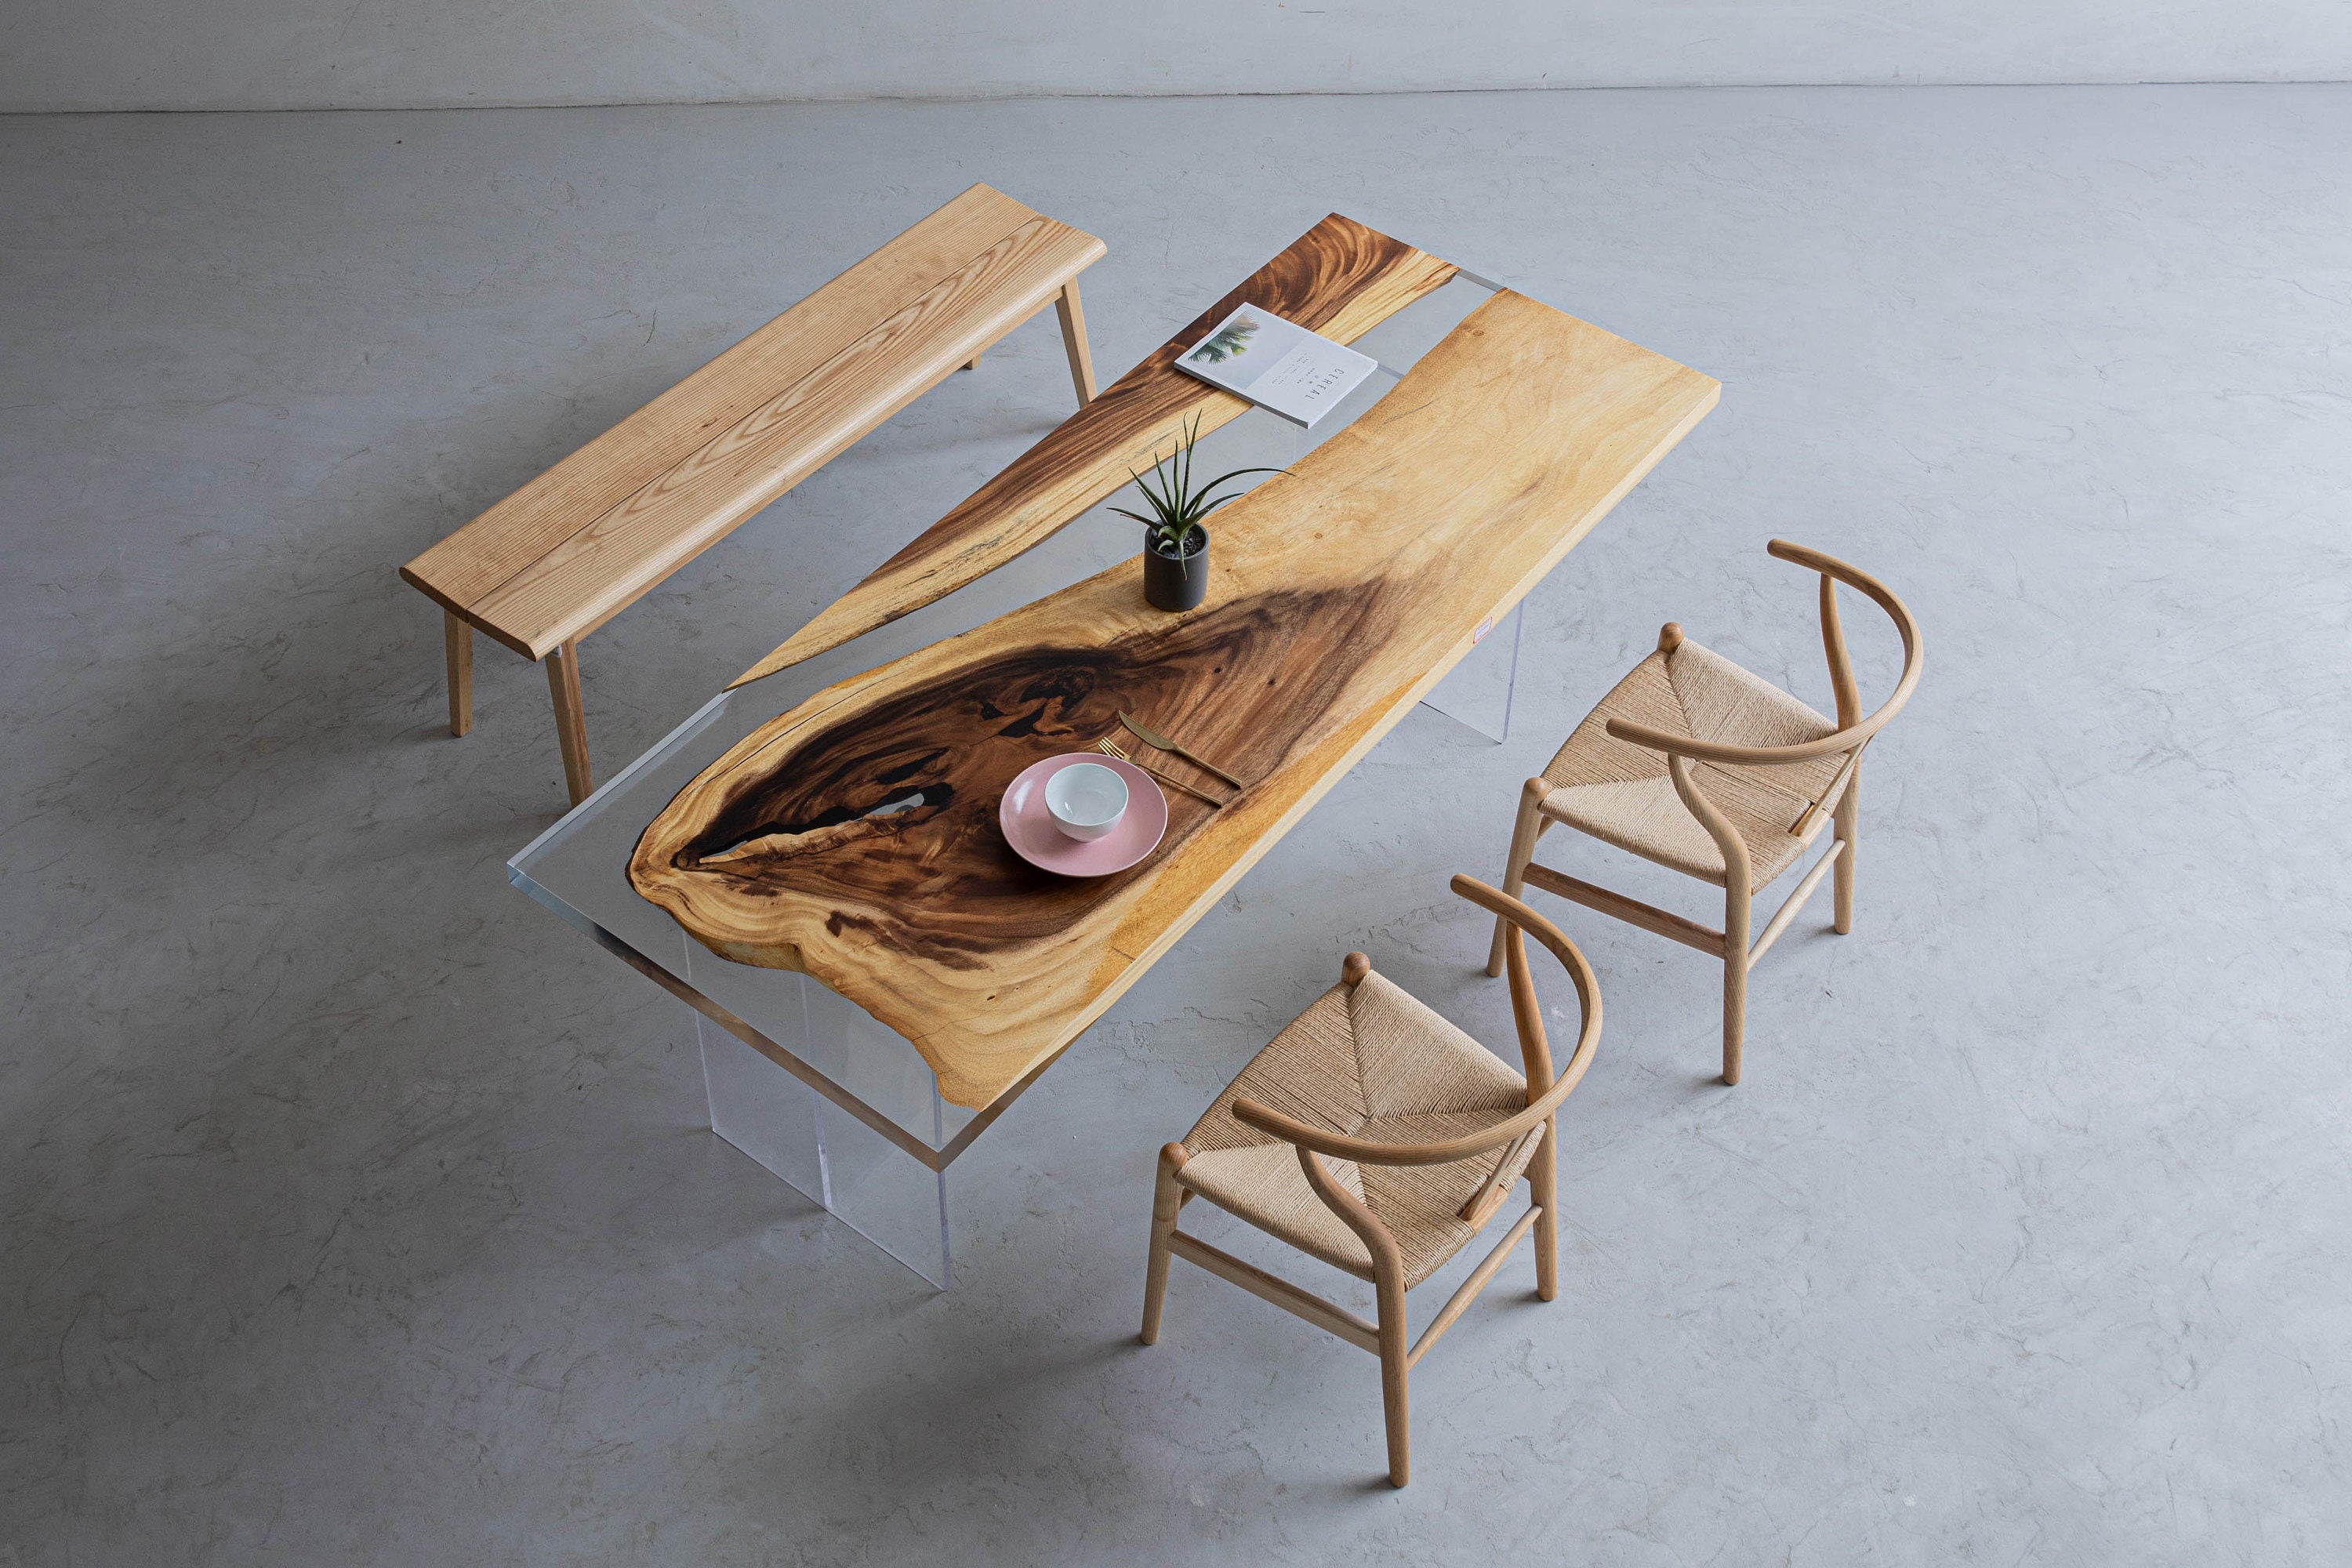 Tavolo in resina epossidica di colore chiaro, tavolo in legno massello, forma speciale del legno per la selezione